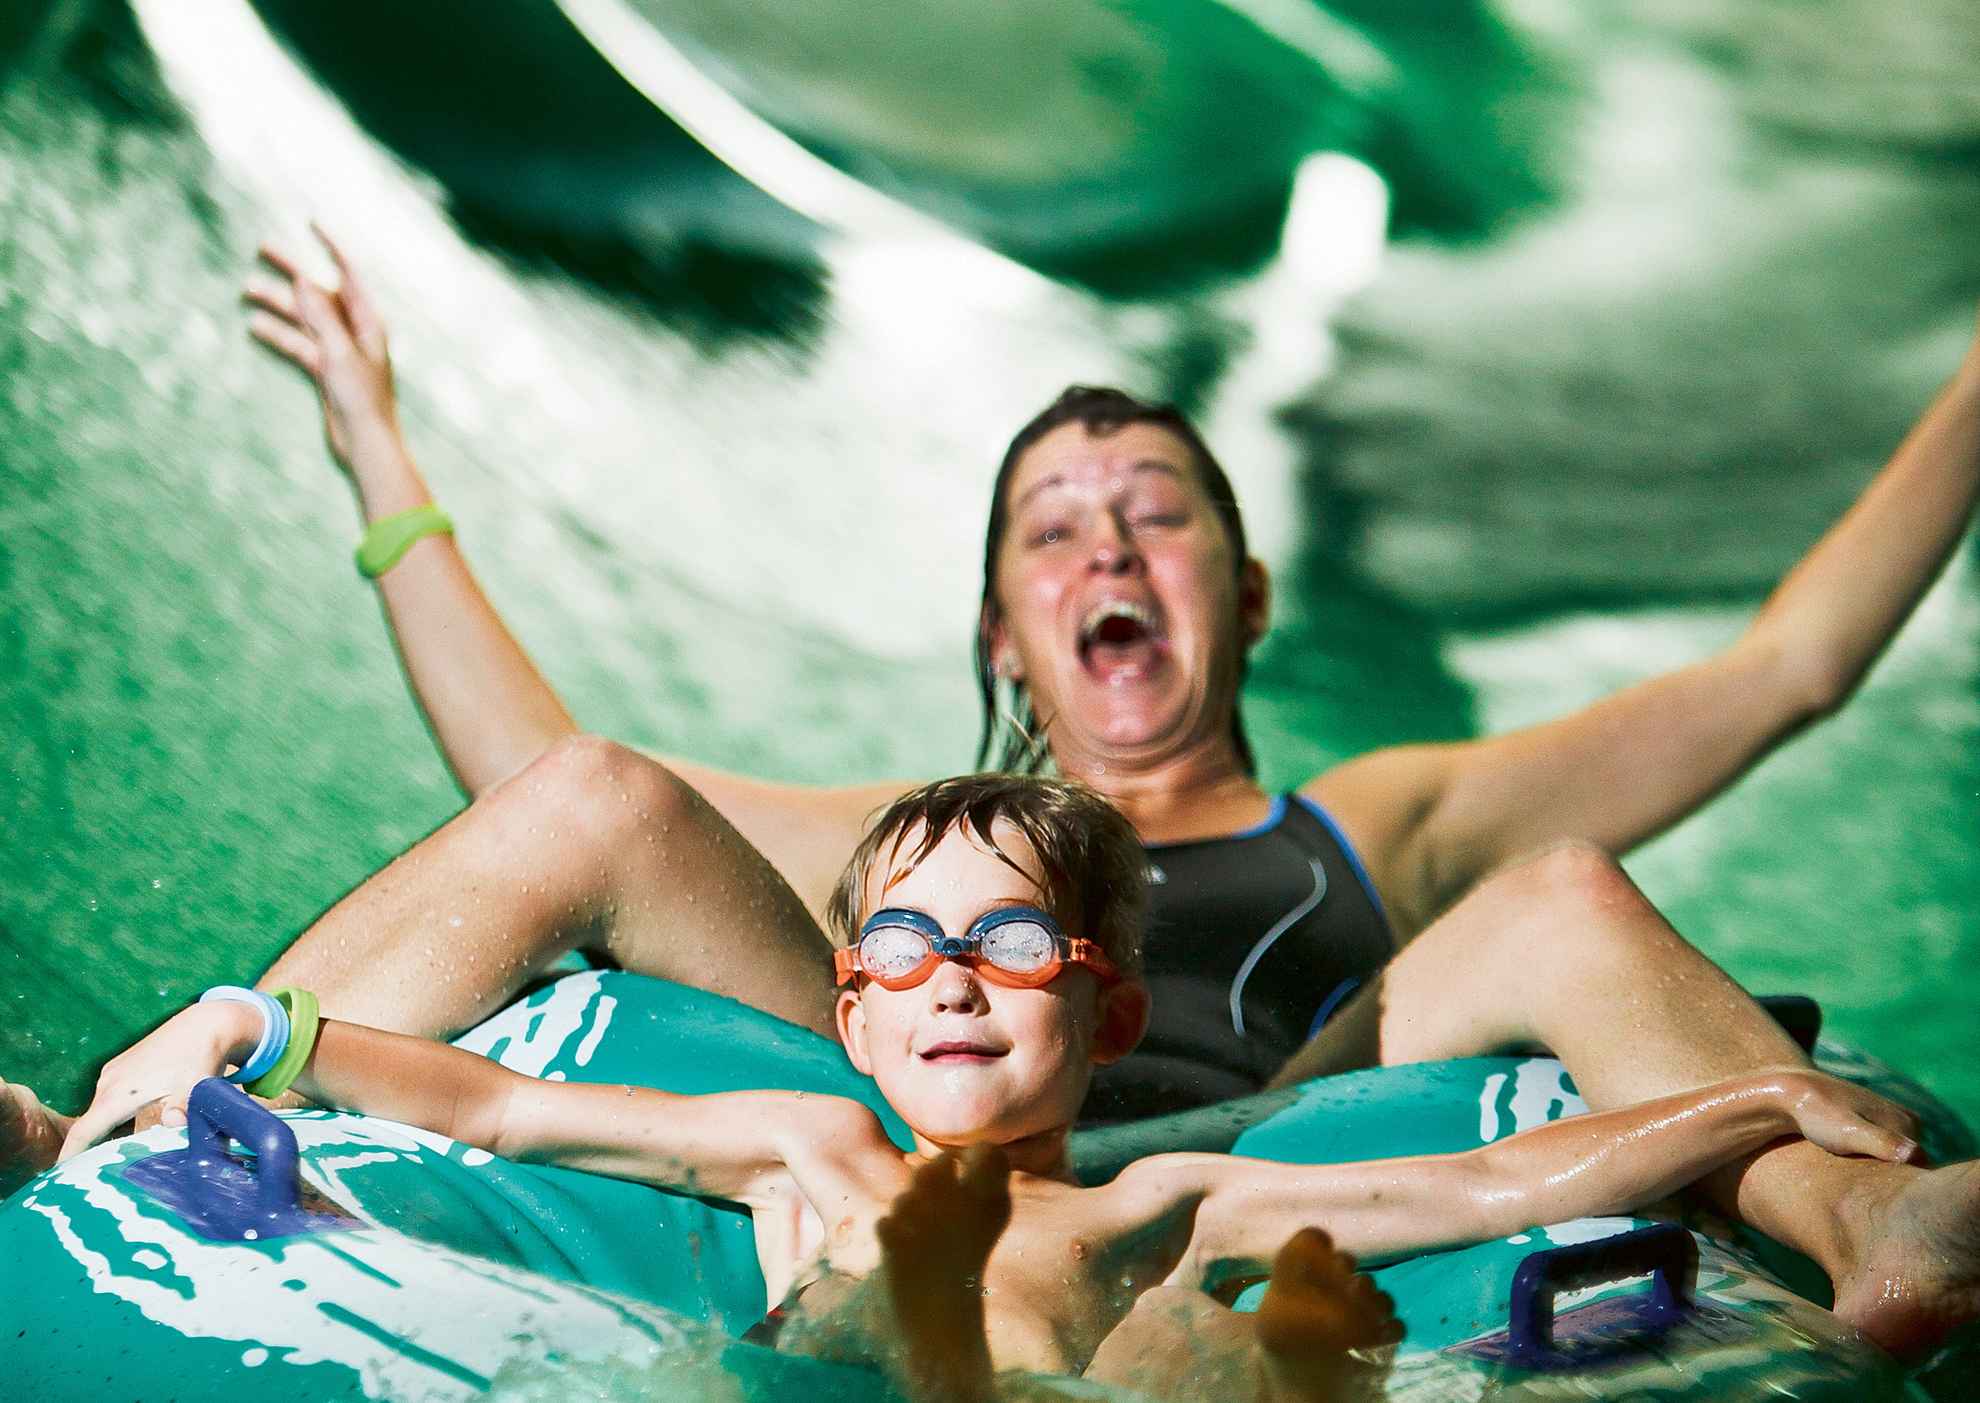 Un garçon souriant avec des lunettes de natation sur un toboggan aquatique avec une femme qui rit.